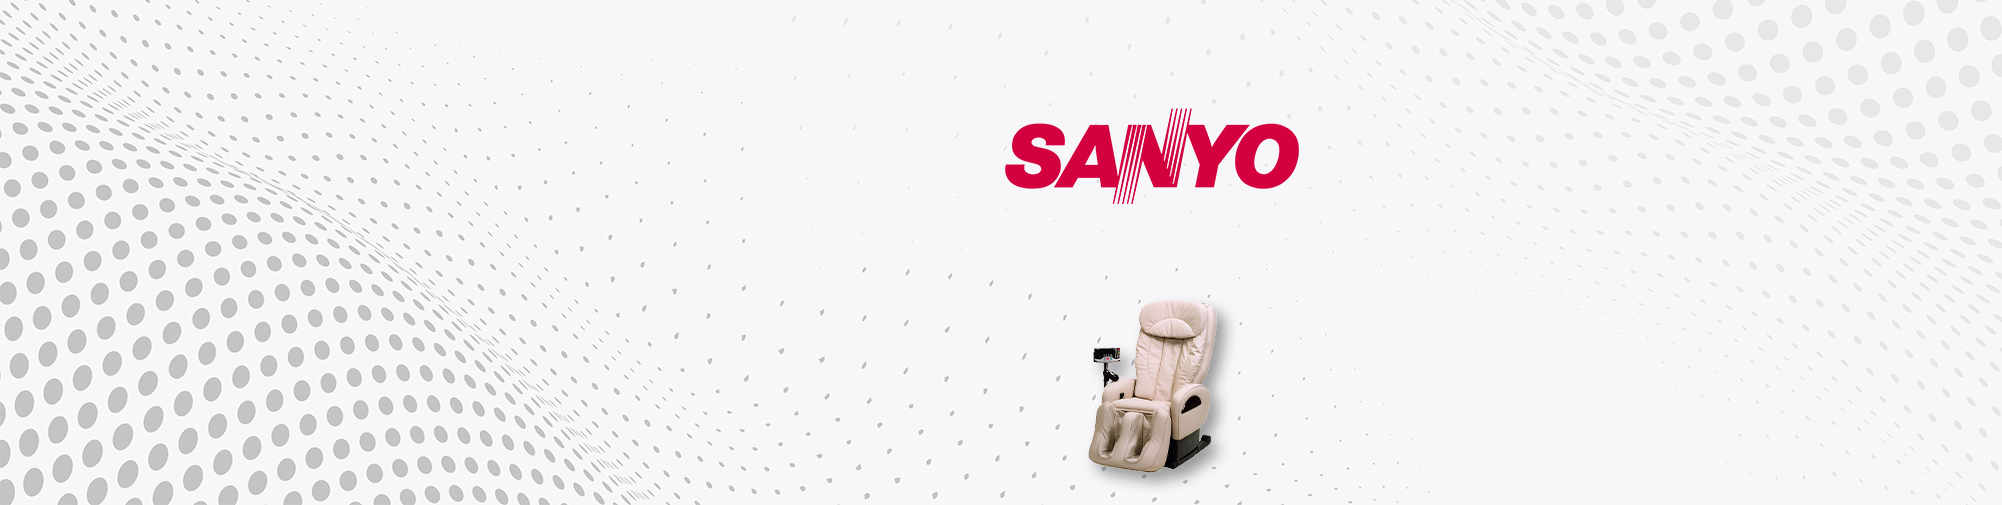 SANYO - 일본 브랜드 회사 | 마사지 의자 세계